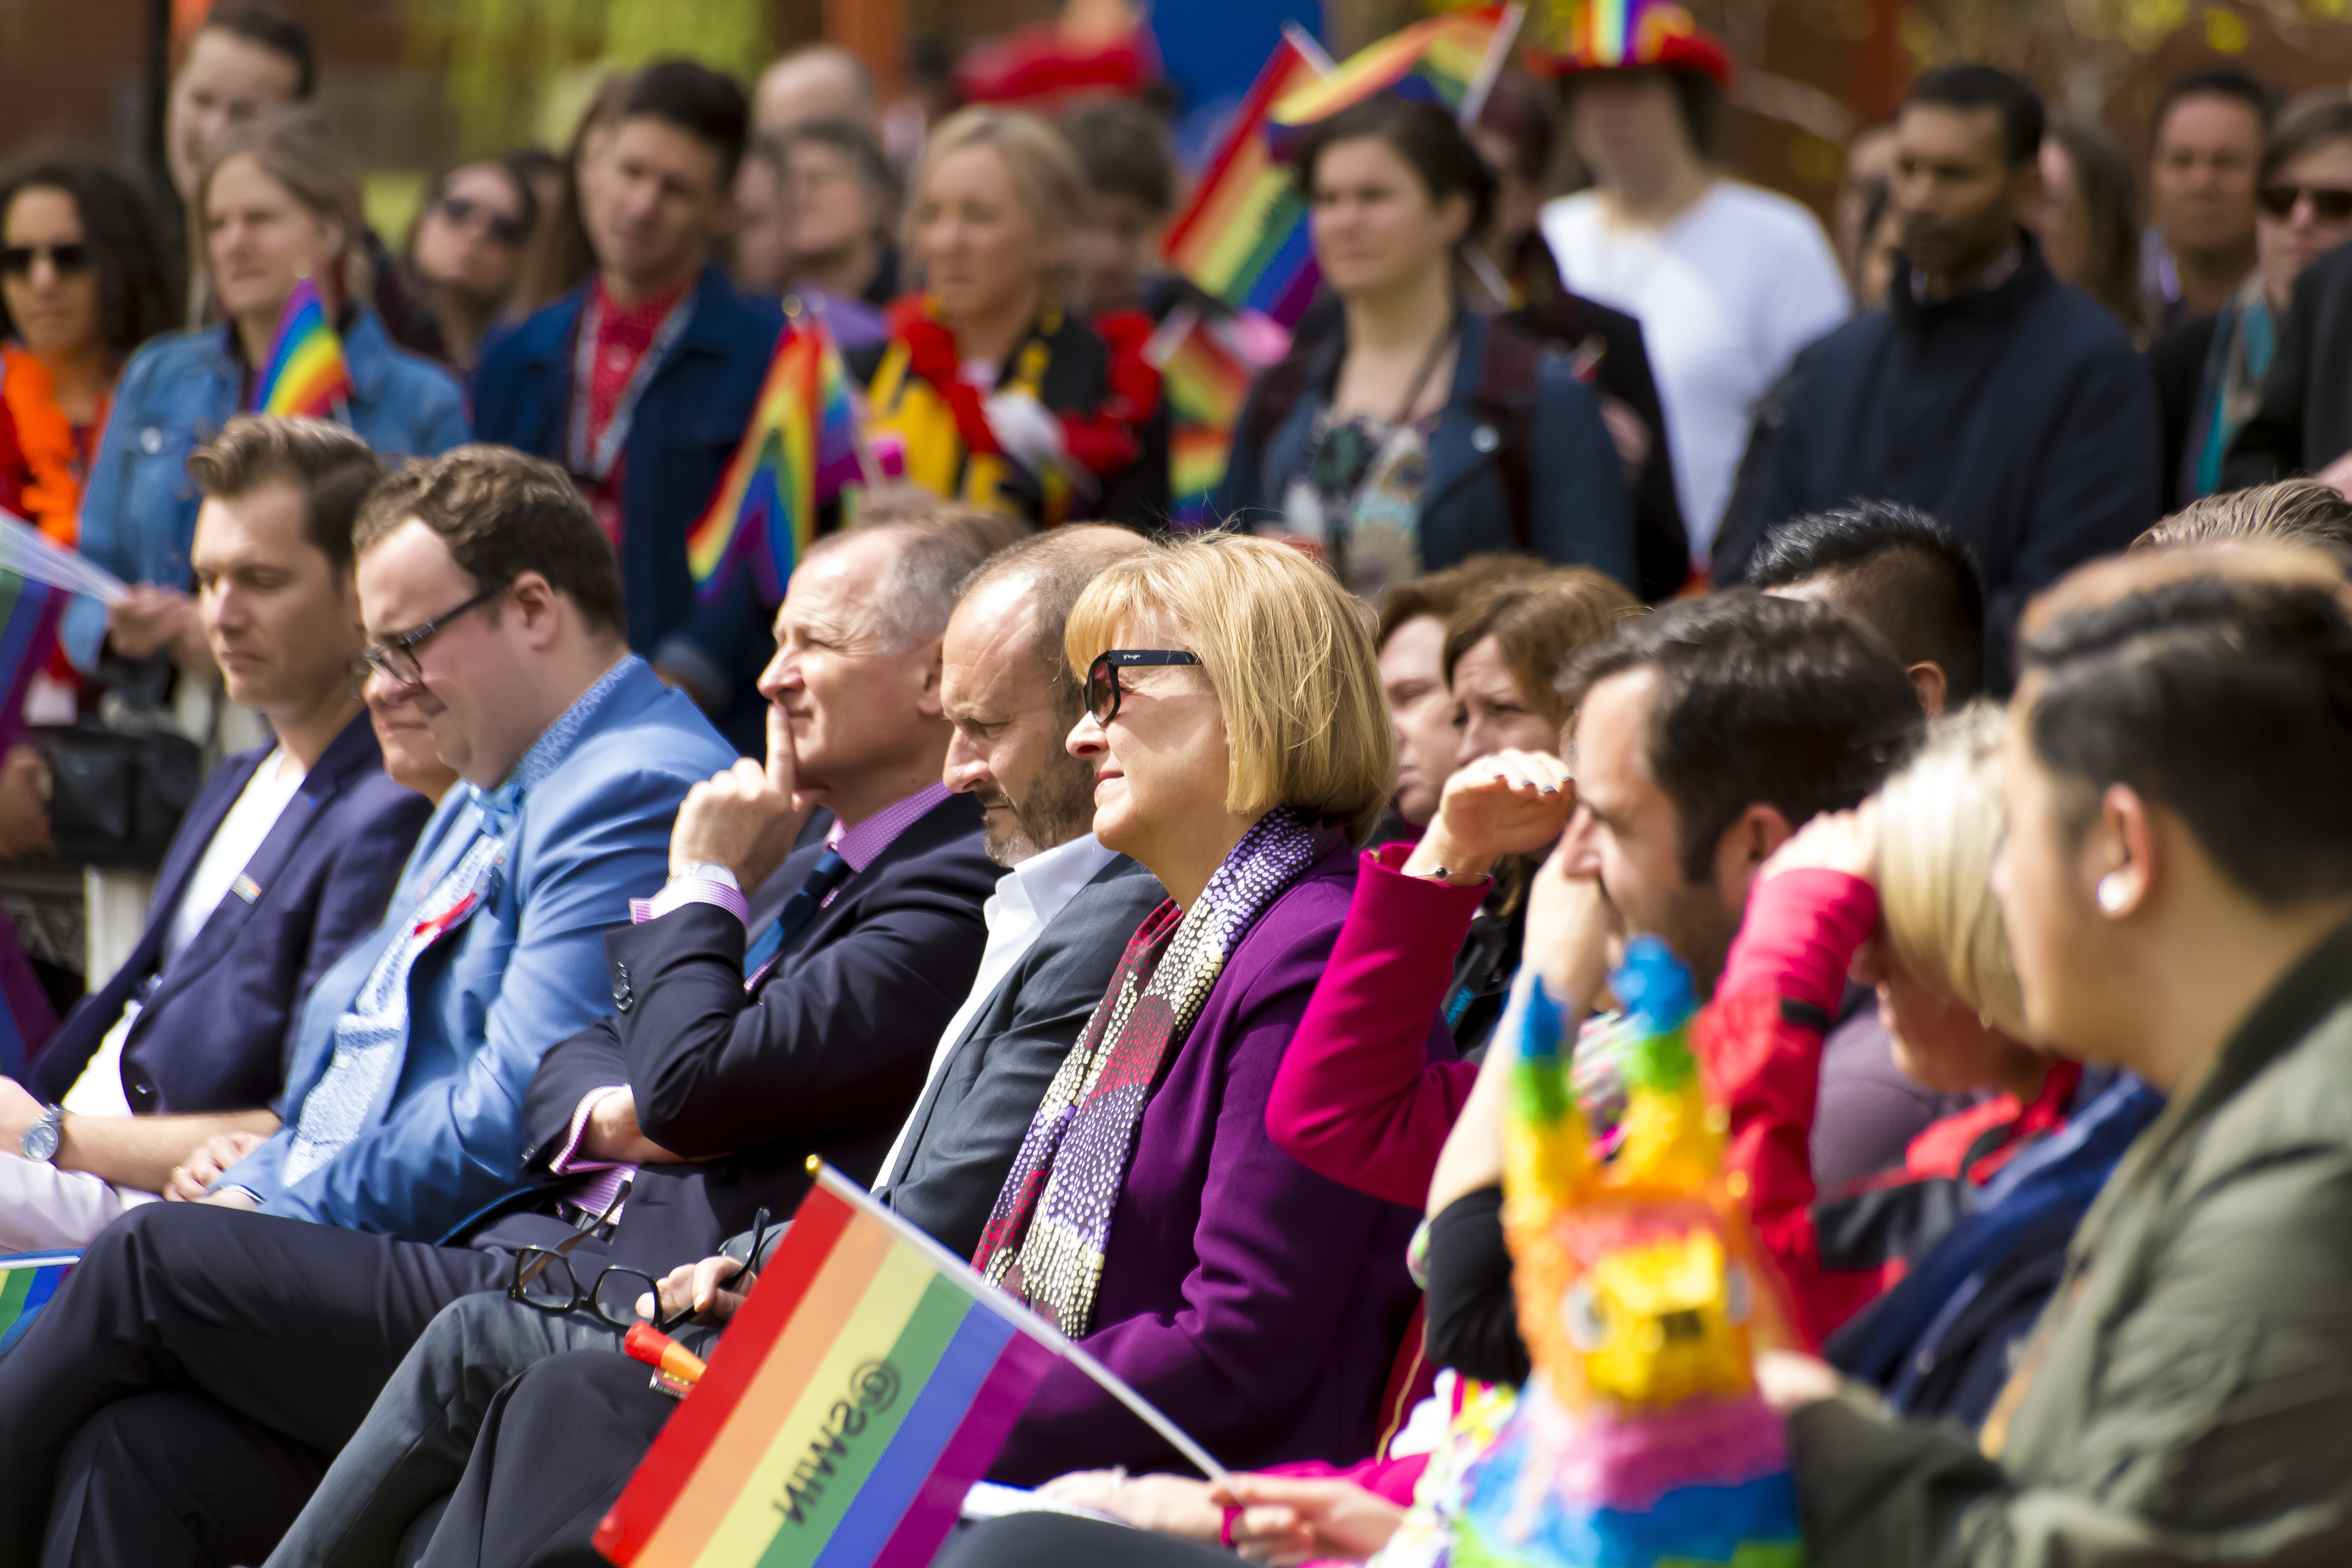 一群人举着彩虹旗参加在校园举行的骄傲日活动